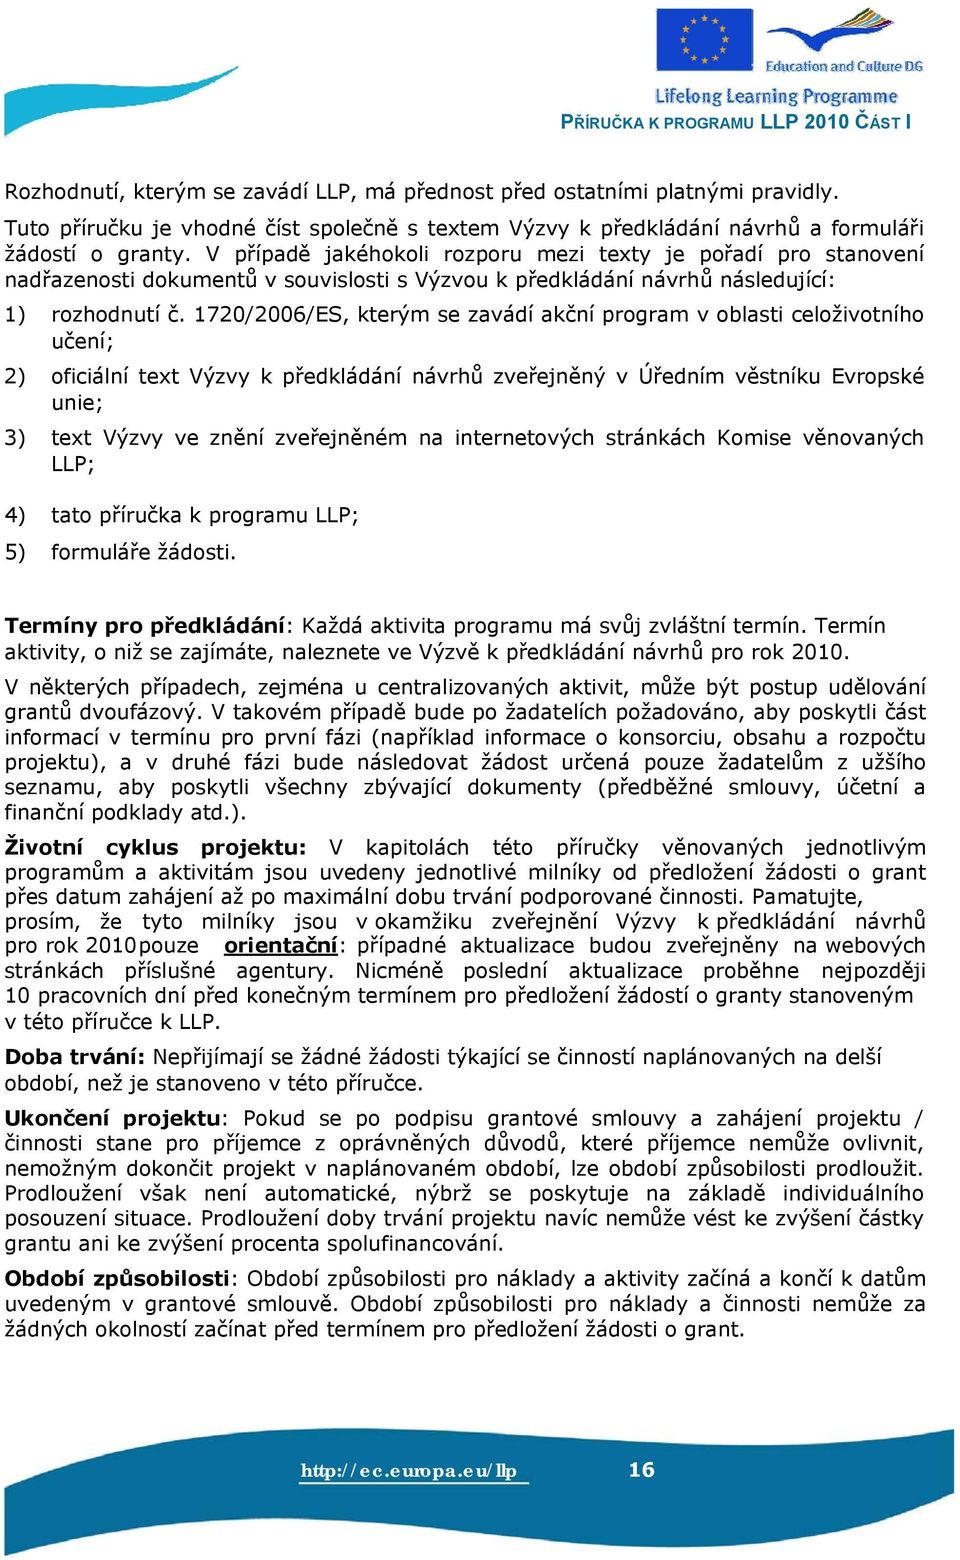 1720/2006/ES, kterým se zavádí akční program v oblasti celoživotního učení; 2) oficiální text Výzvy k předkládání návrhů zveřejněný v Úředním věstníku Evropské unie; 3) text Výzvy ve znění